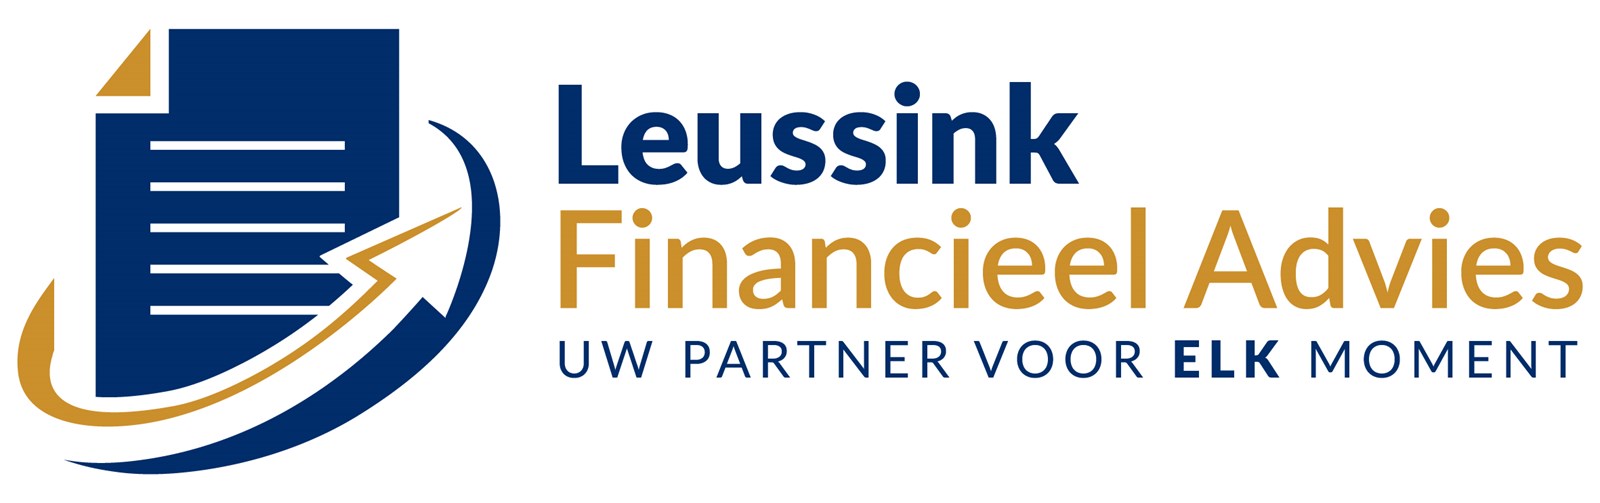 Logo van Leussink Financieel Advies